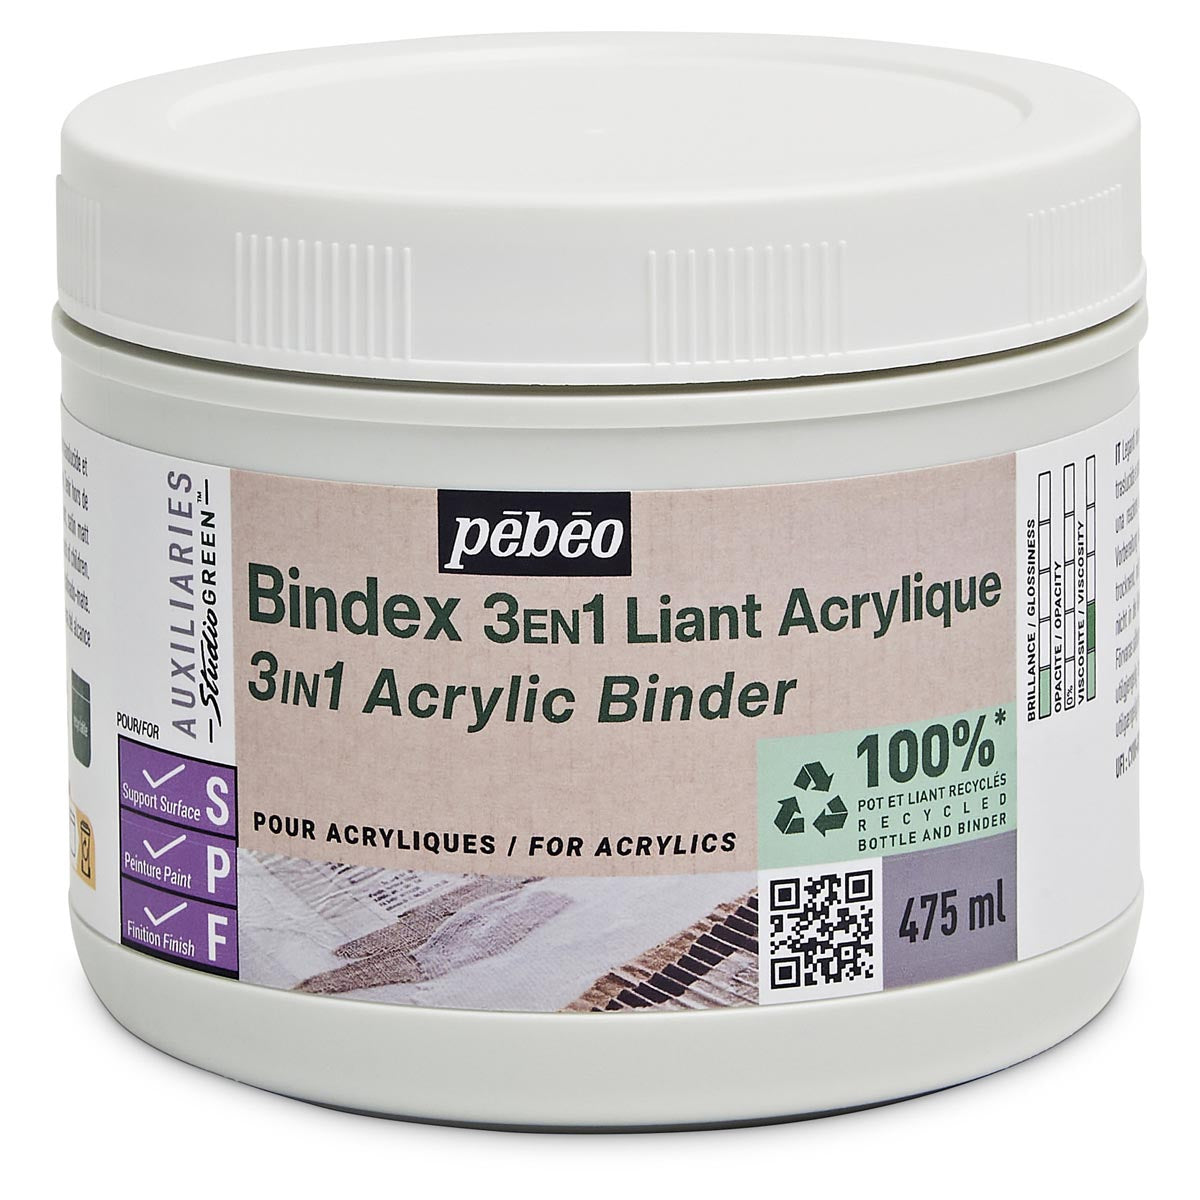 Pebeo - BindEx 3IN1 acrylique Binder Studio Green - 475 ml